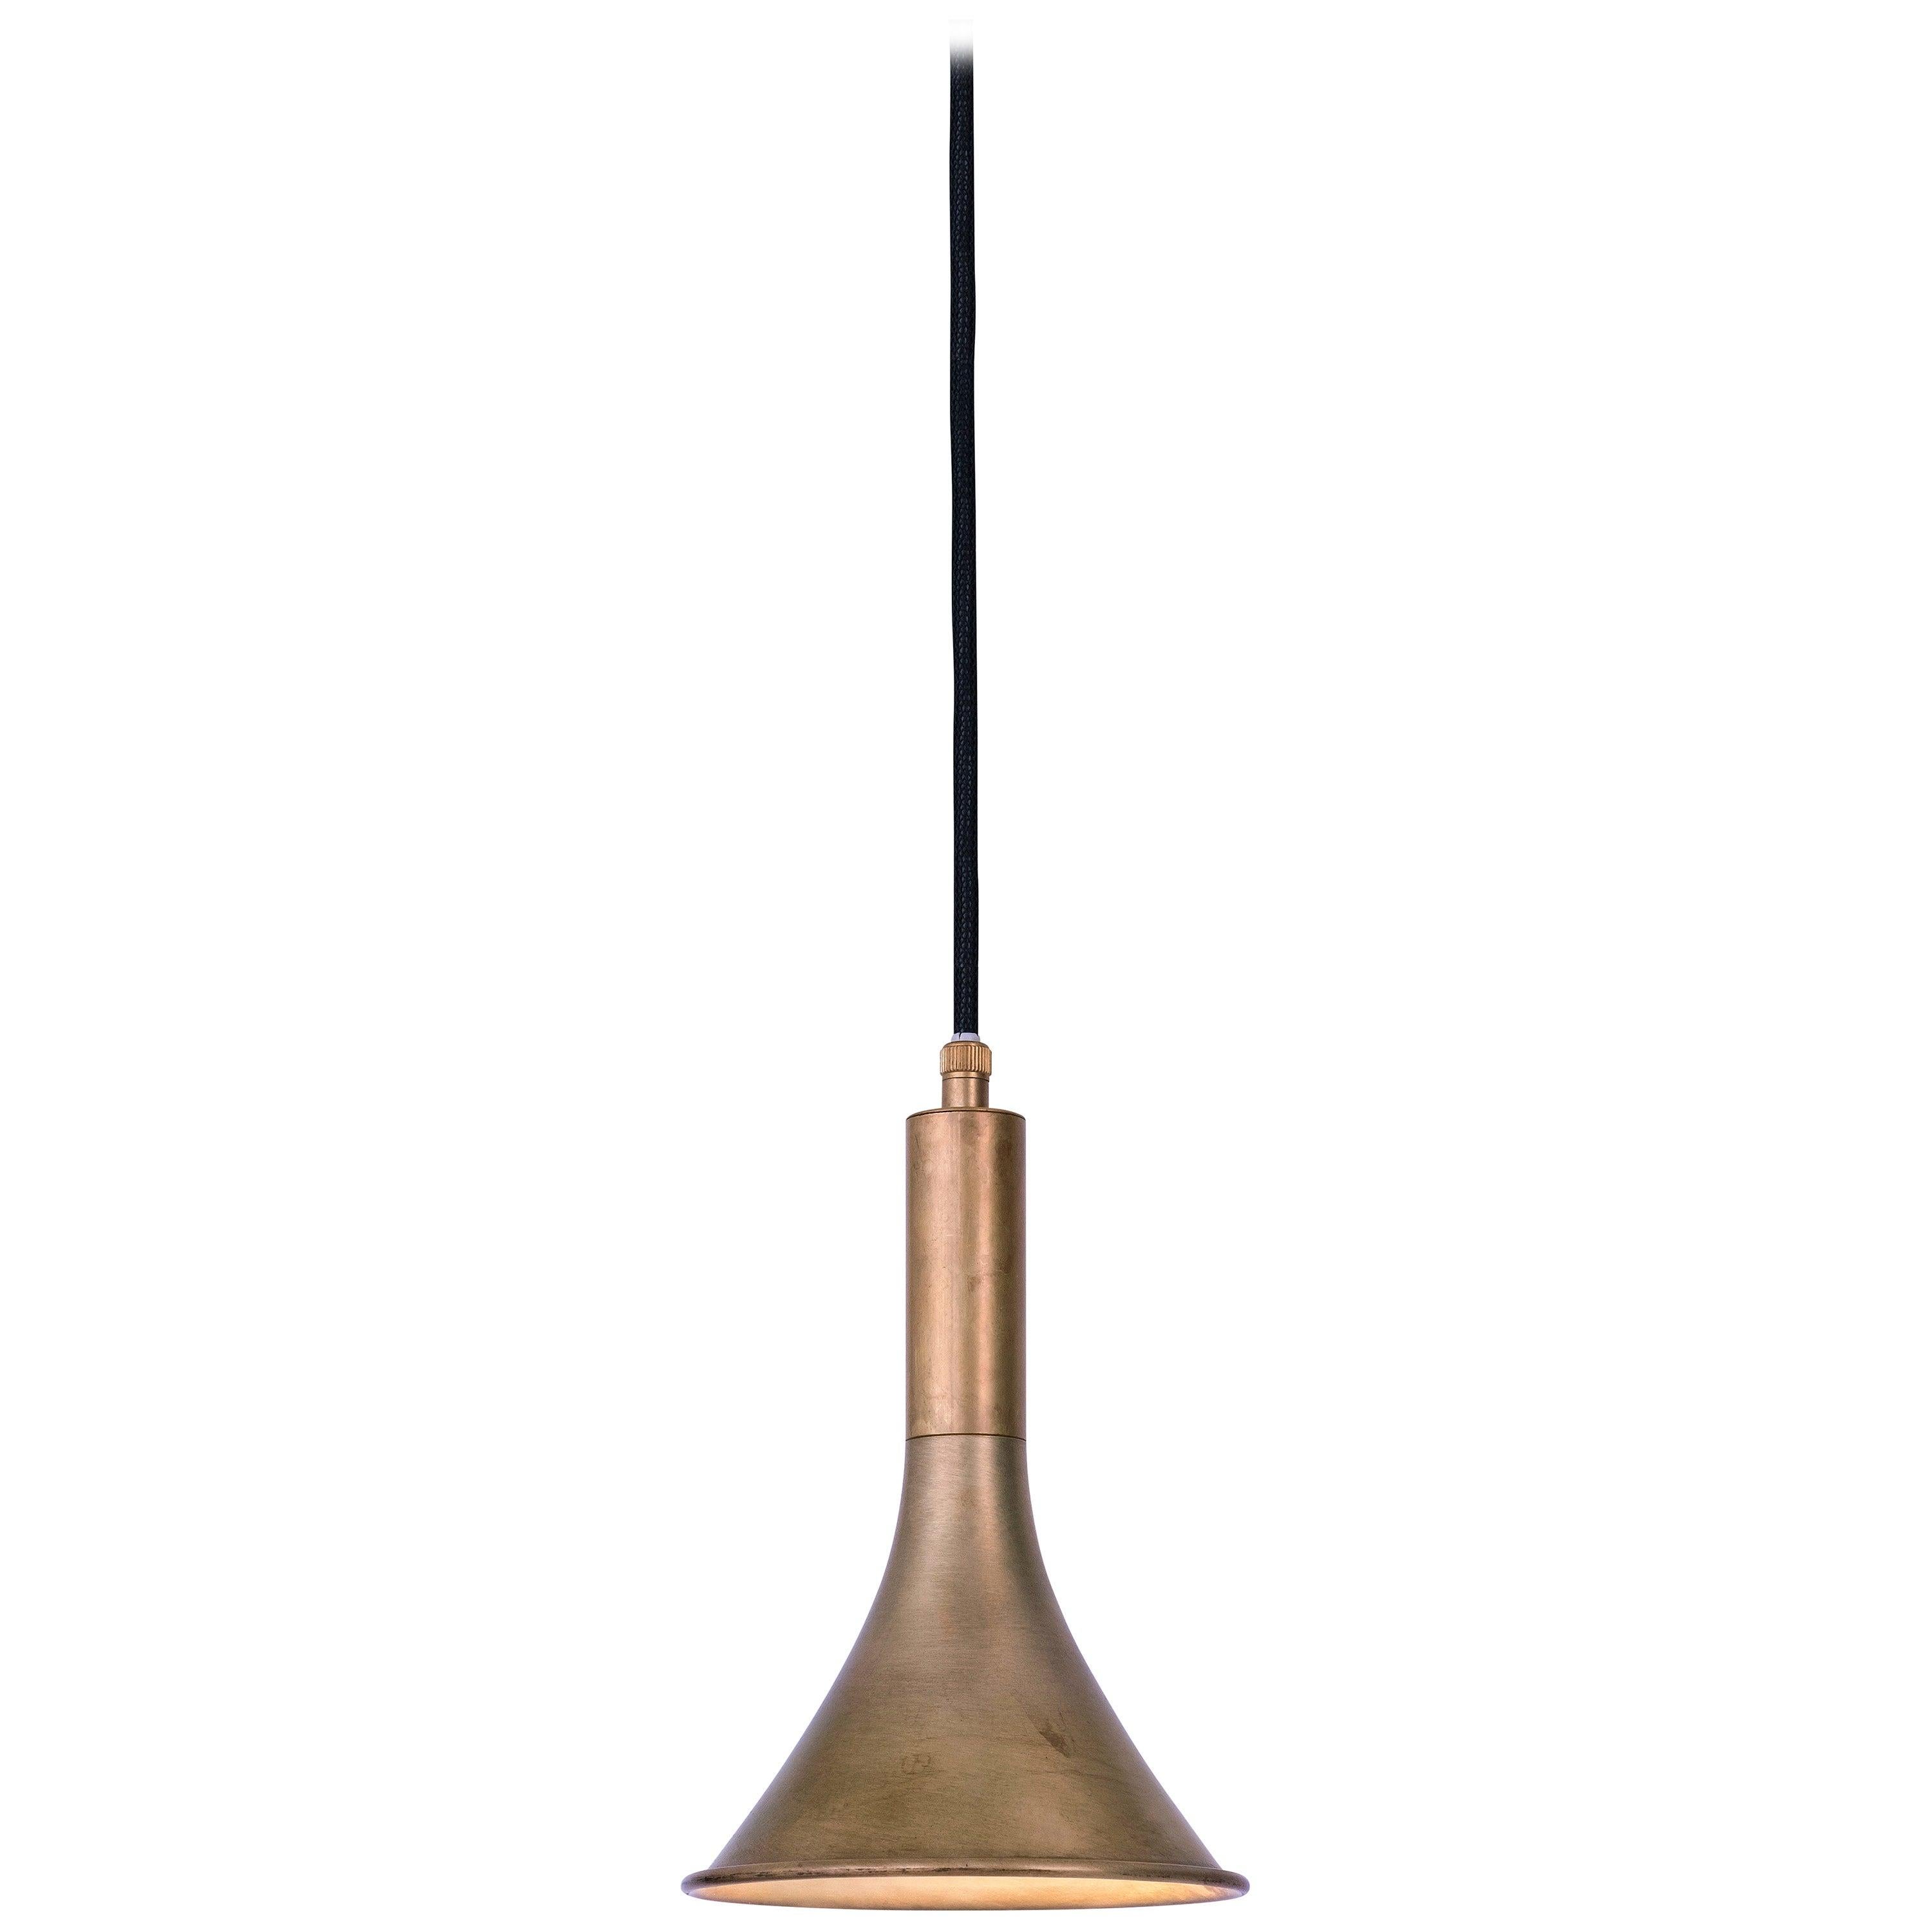 Jesper Ståhl Megafon Raw Brass Ceiling Lamp by Konsthantverk In New Condition In Barcelona, Barcelona